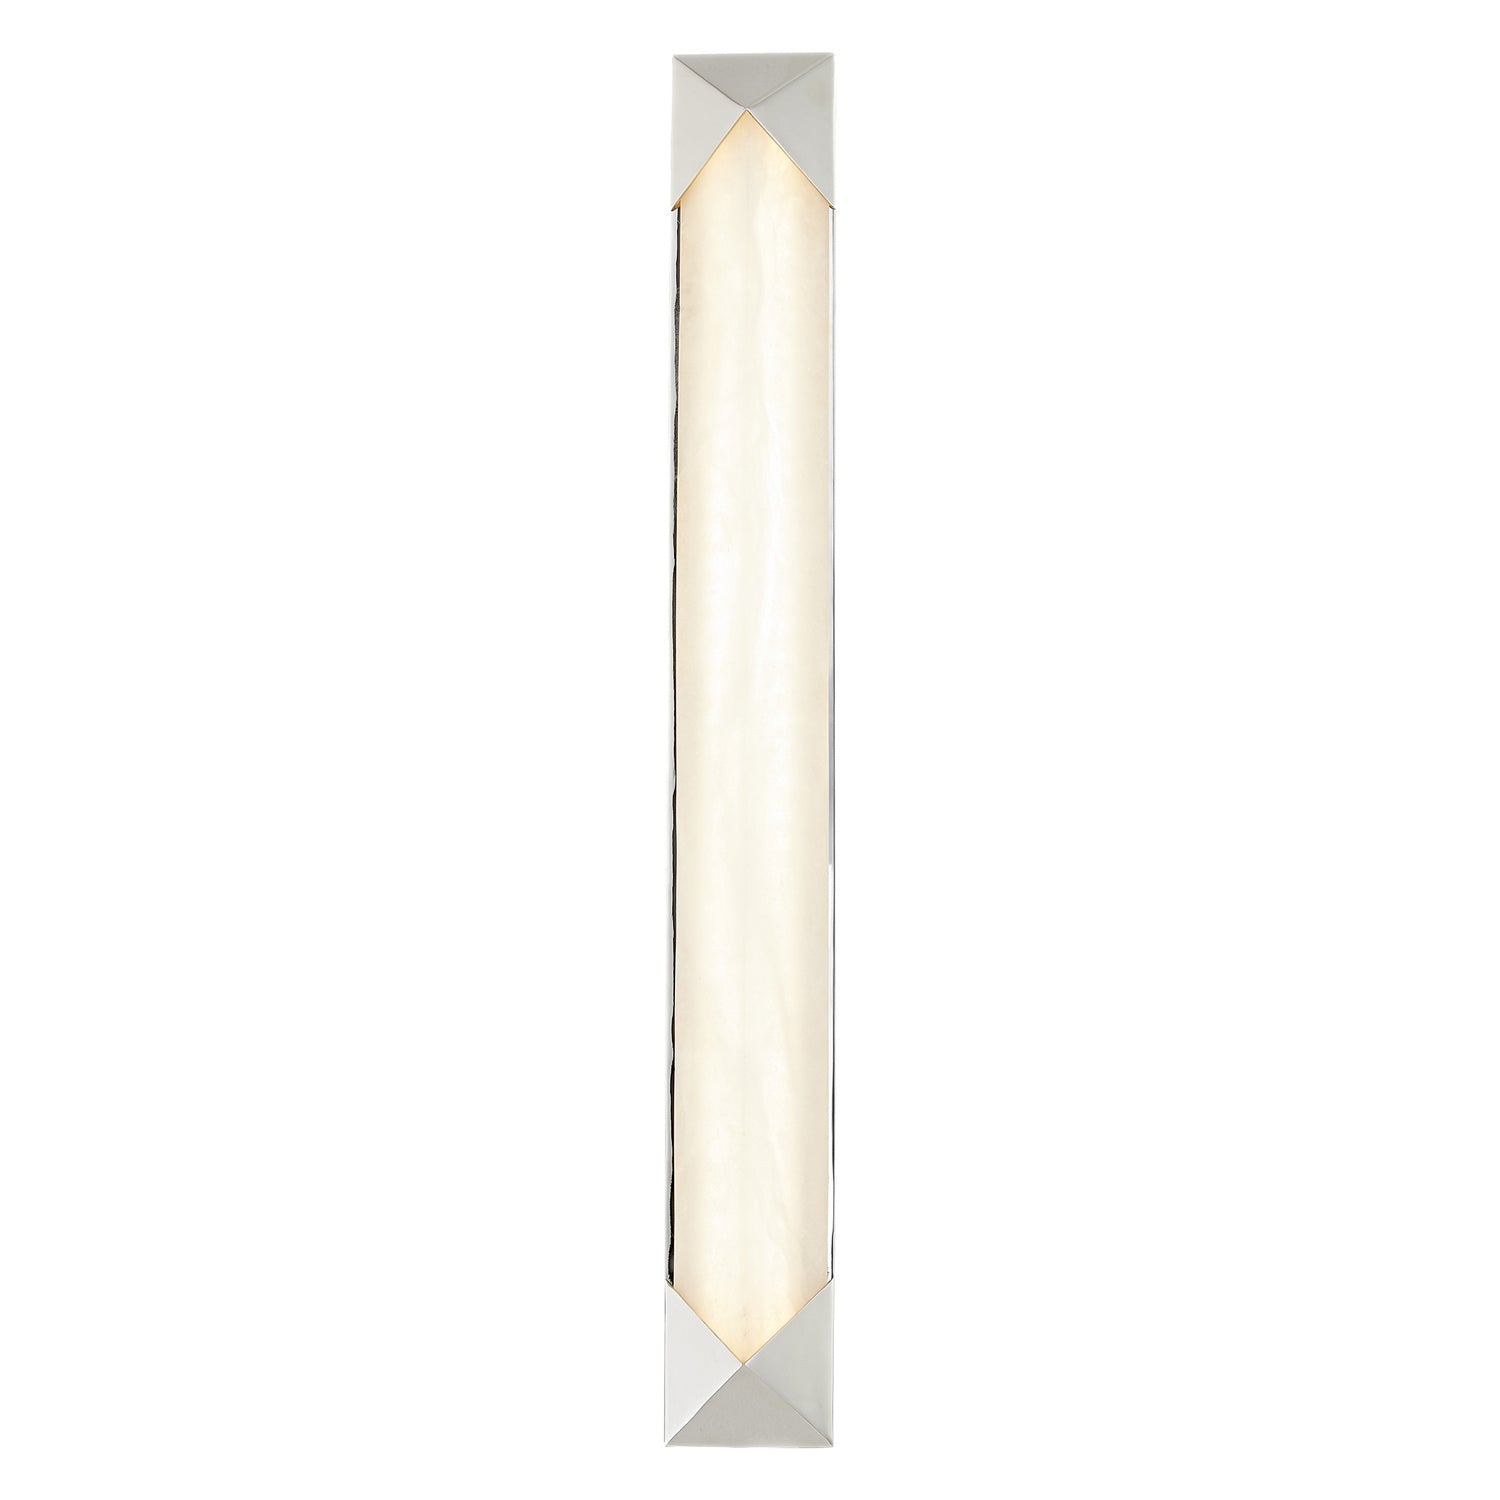 Alora Canada - LED Vanity - Caesar - Polished Nickel/Alabaster- Union Lighting Luminaires Decor